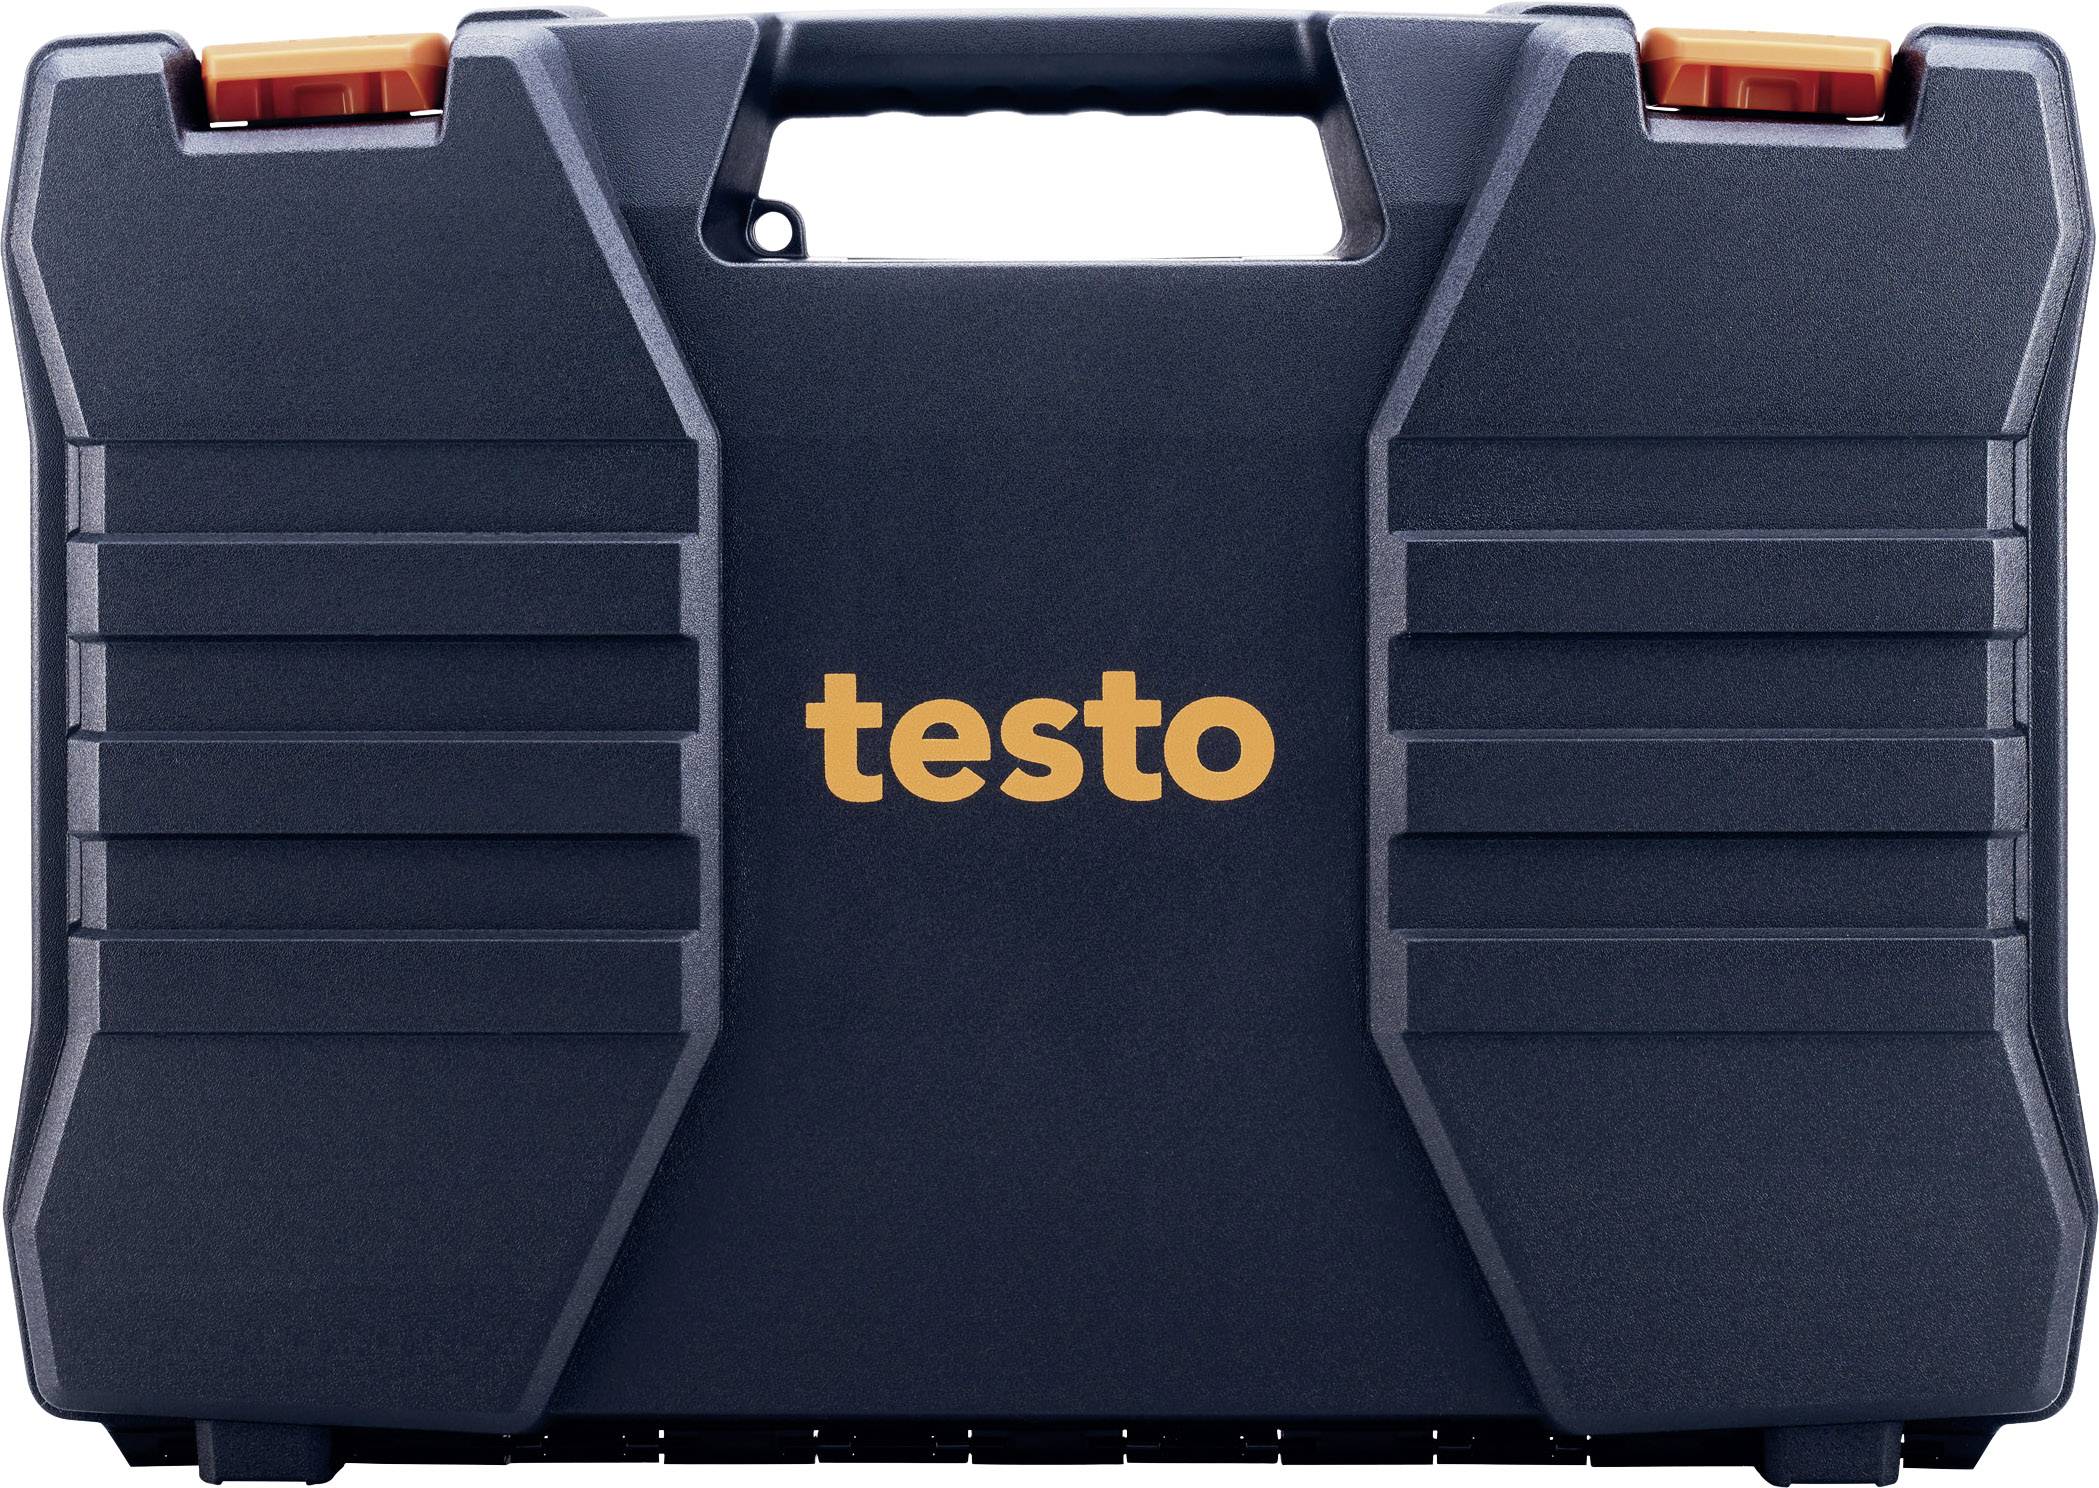 TESTO Geraetekoffer Kompaktklasse Messgeräte-Tasche, Etui Passend für testo 416, testo 425, testo